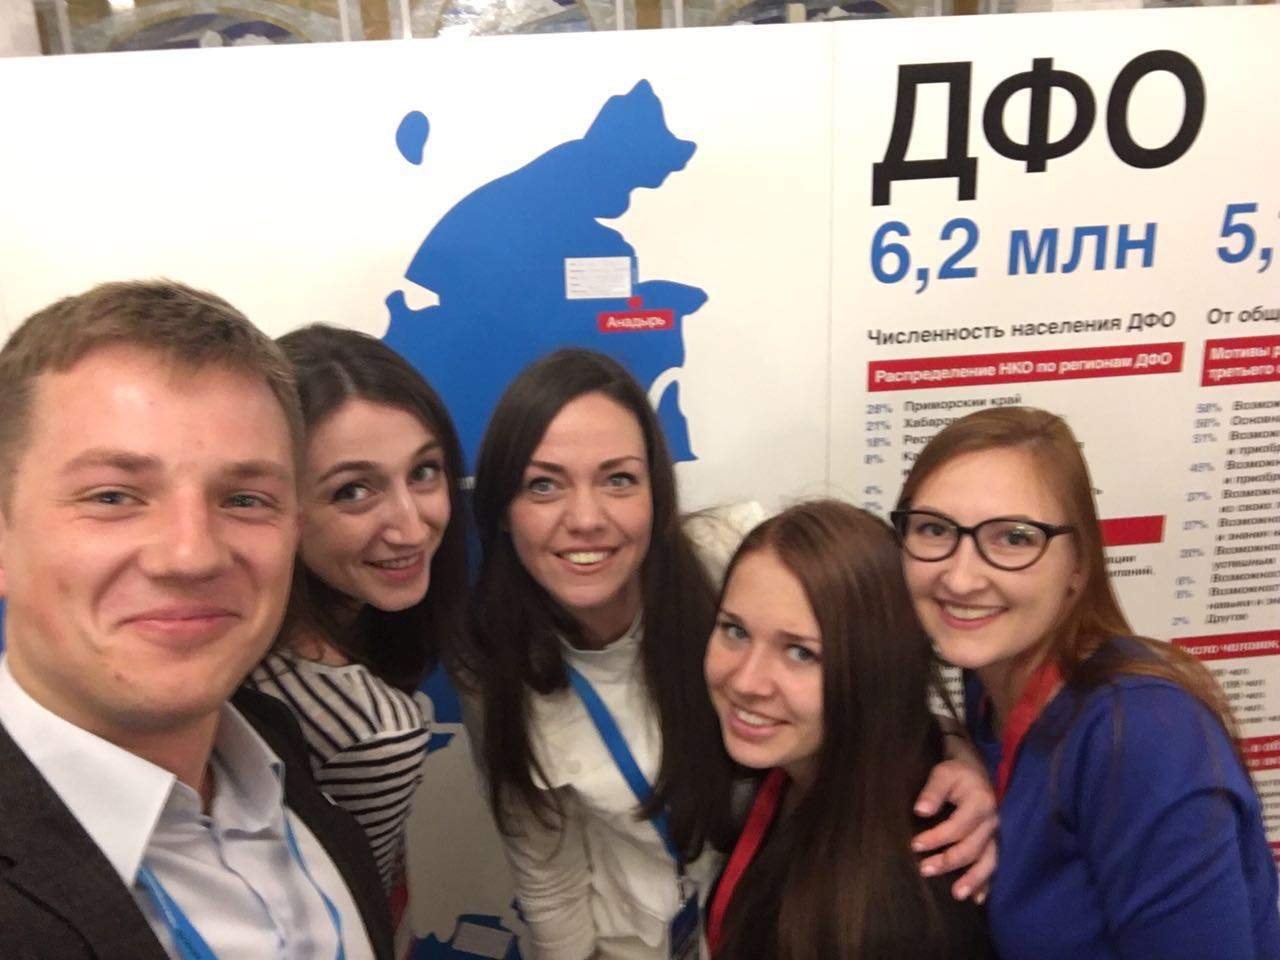 Волонтеры ВГУЭС: Форум «Сообщество» придал новый импульс социальной активности молодежи